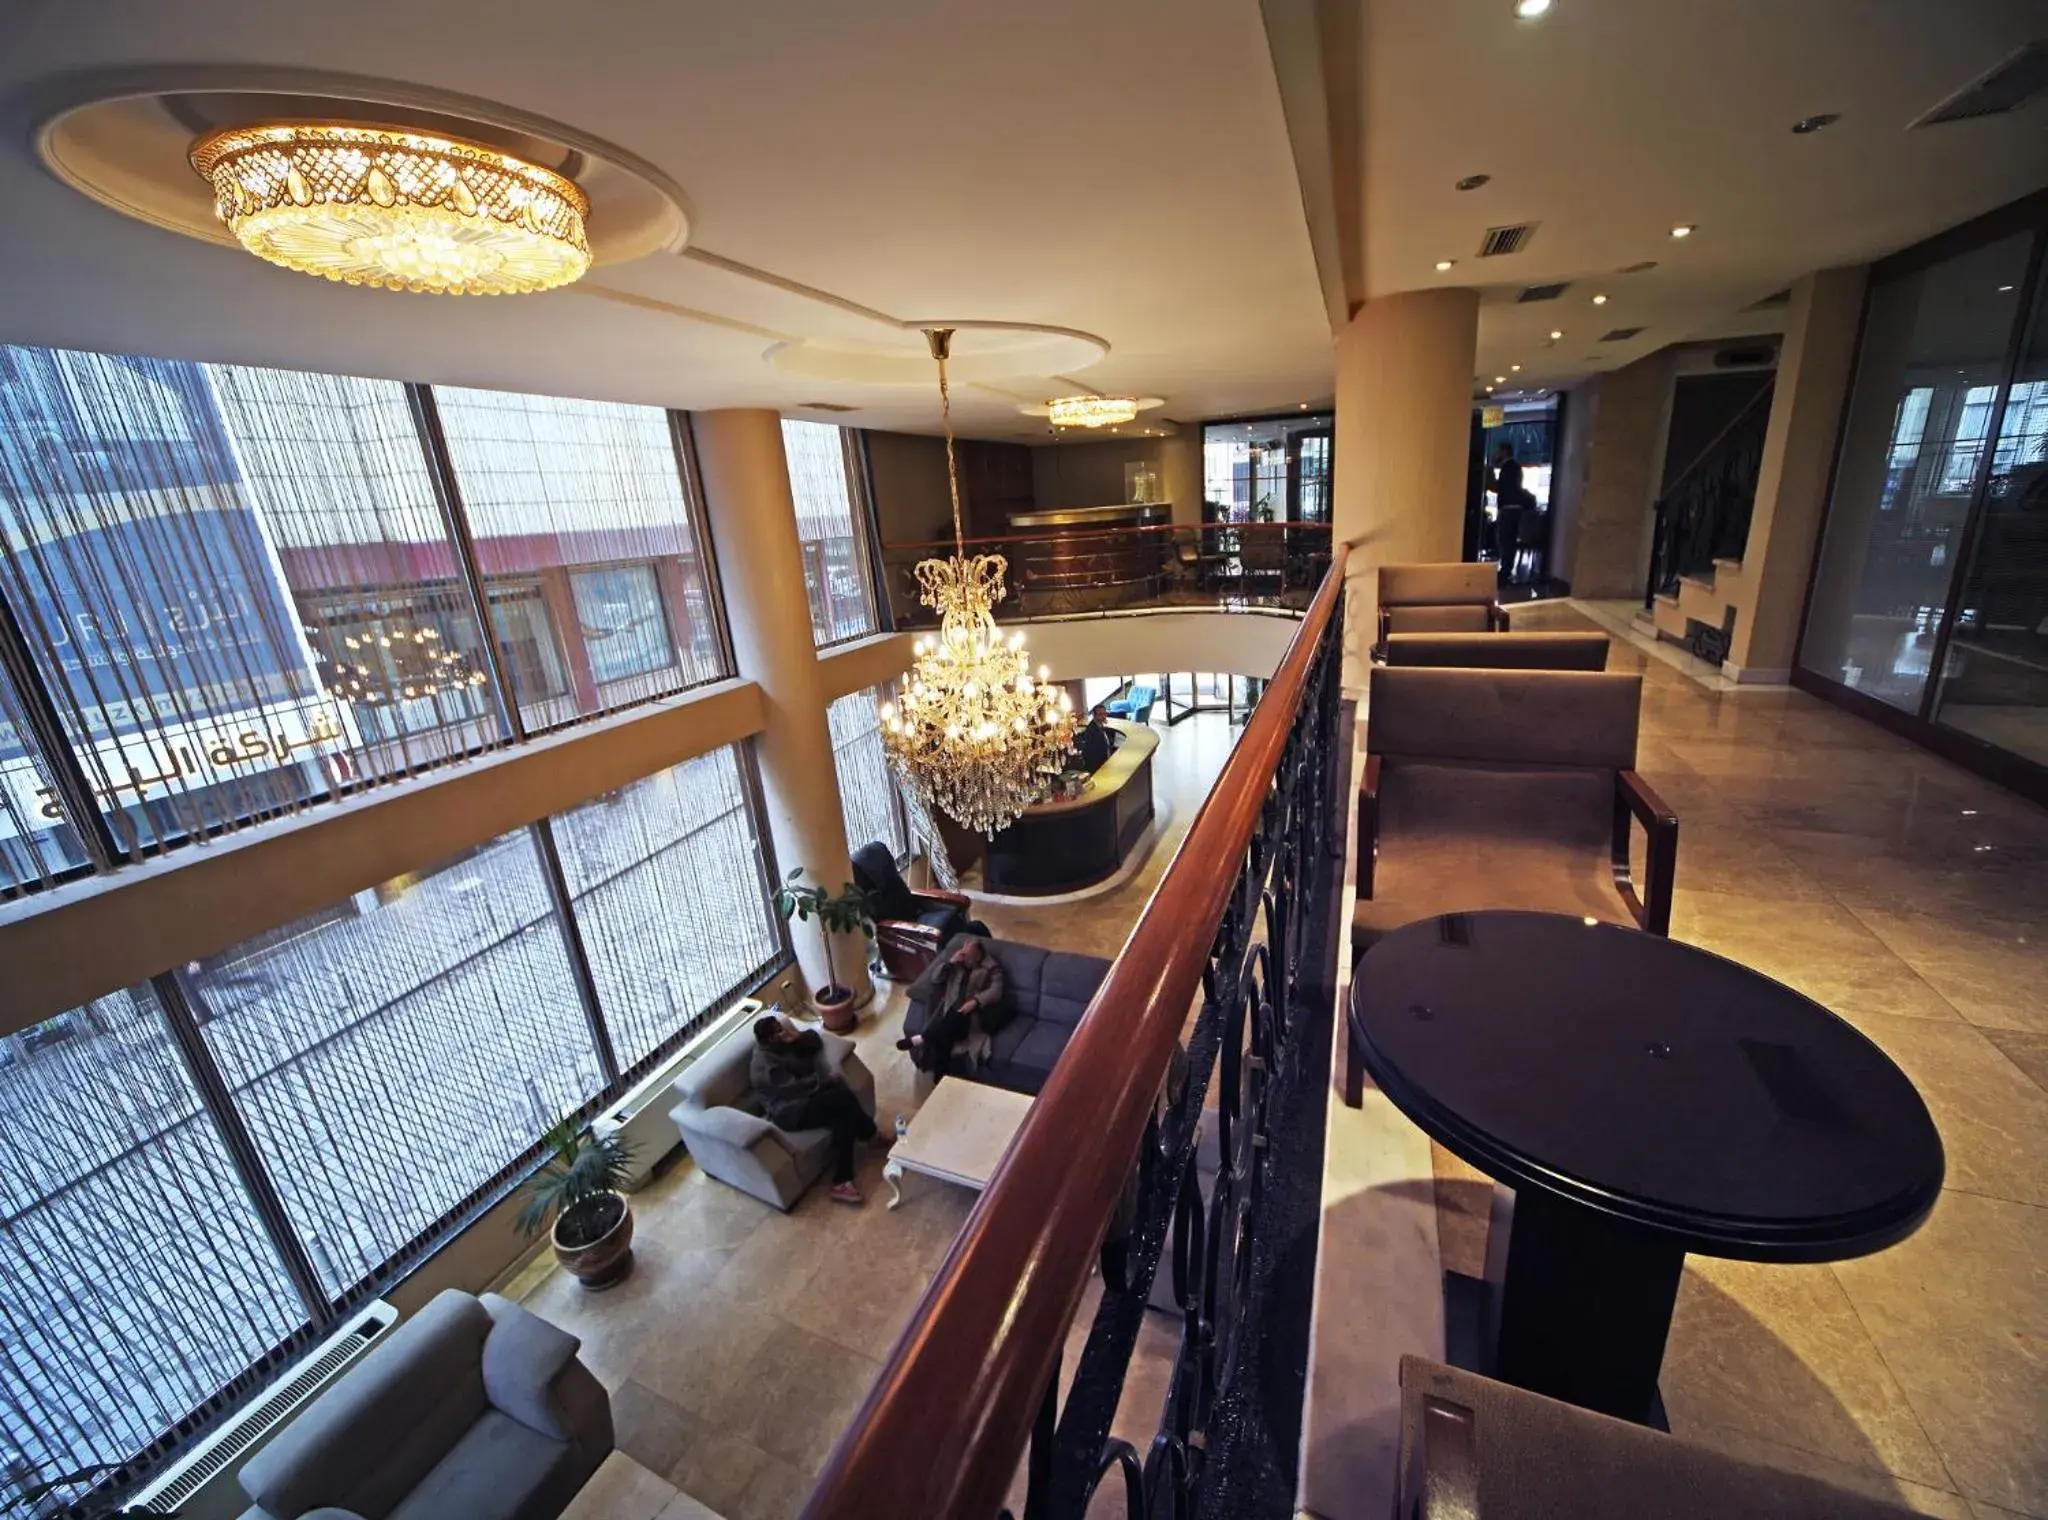 Lobby or reception in Black Bird Hotel